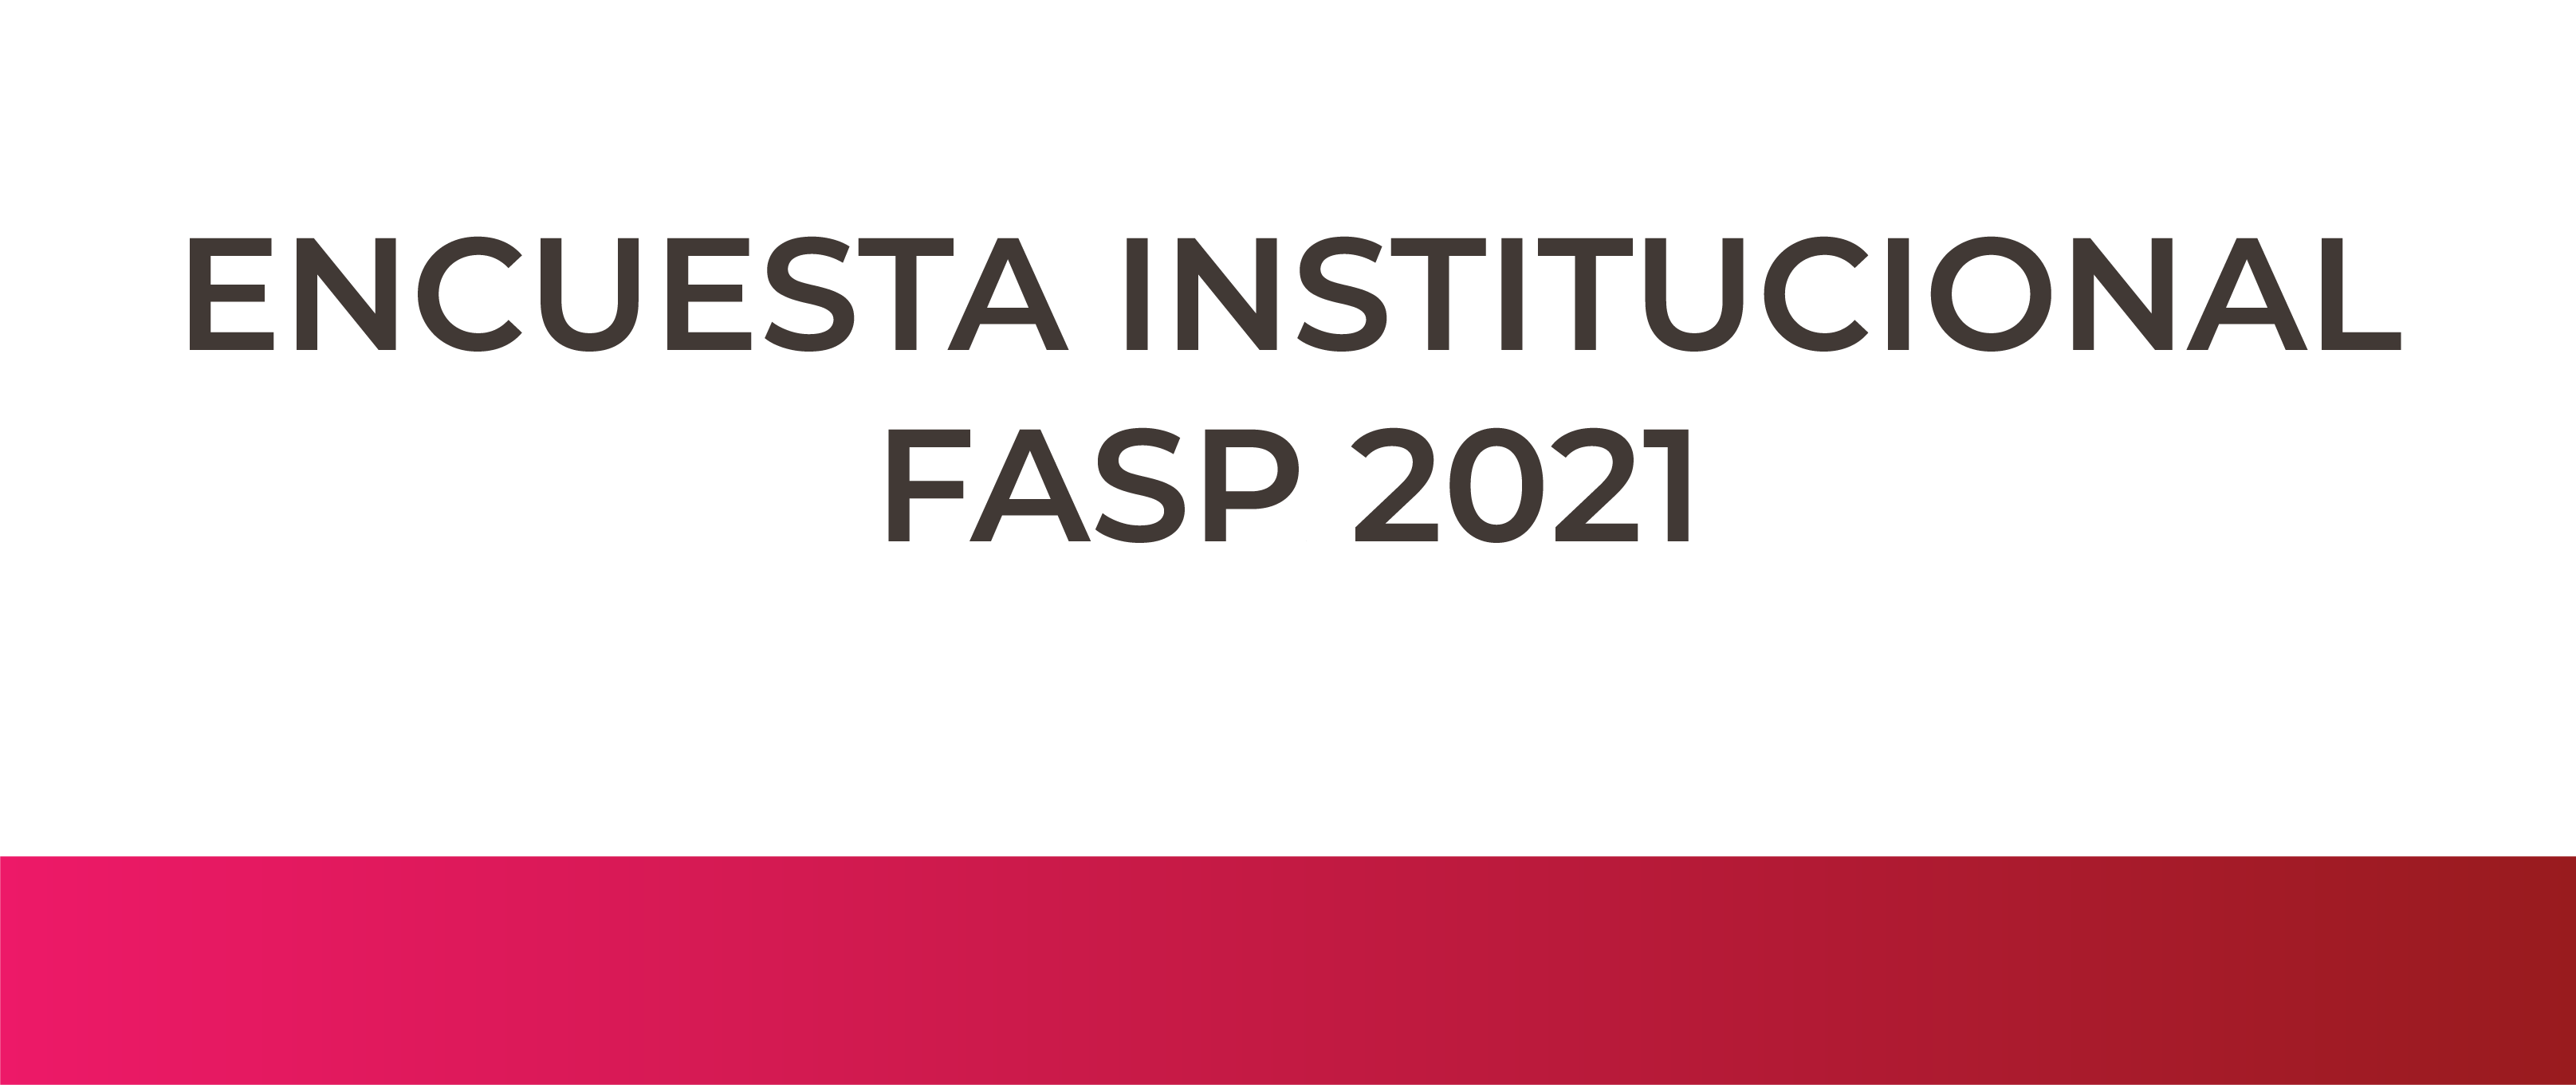 Encuesta Institucional FASP 2021